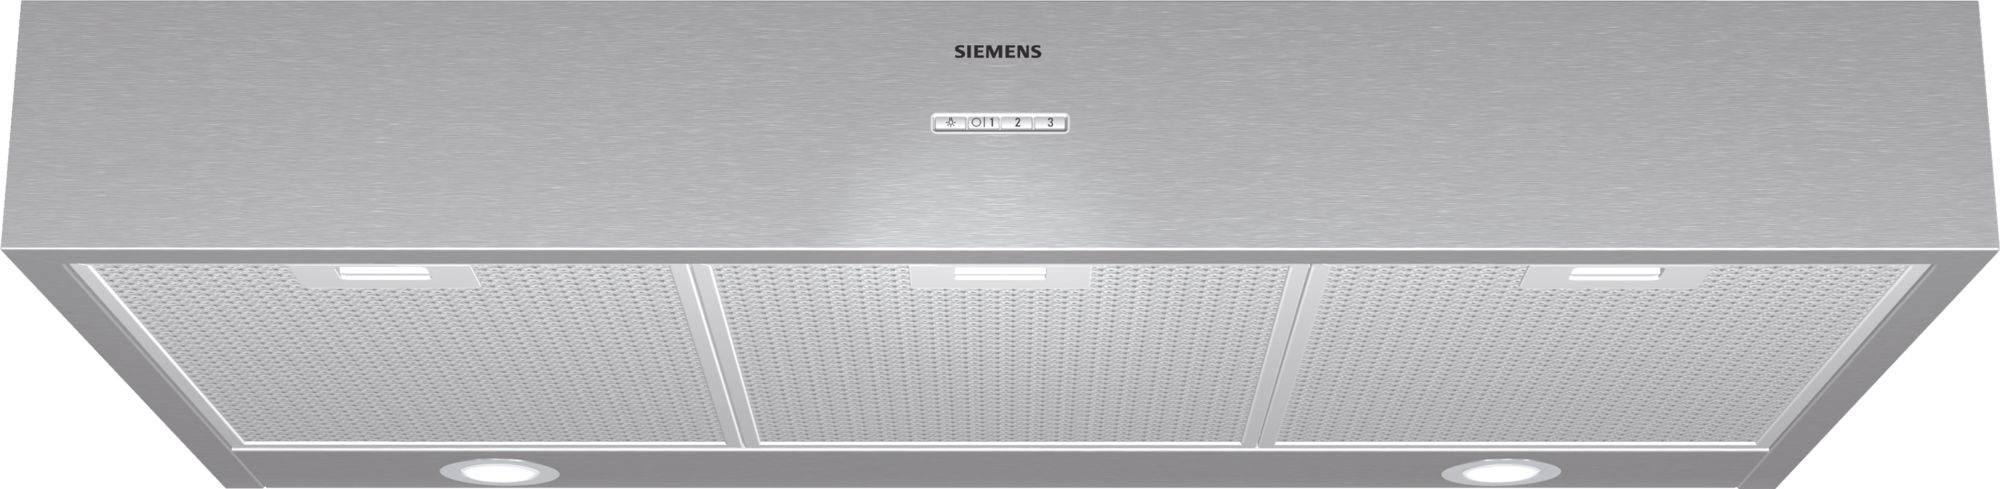 Image of Siemens LU29250